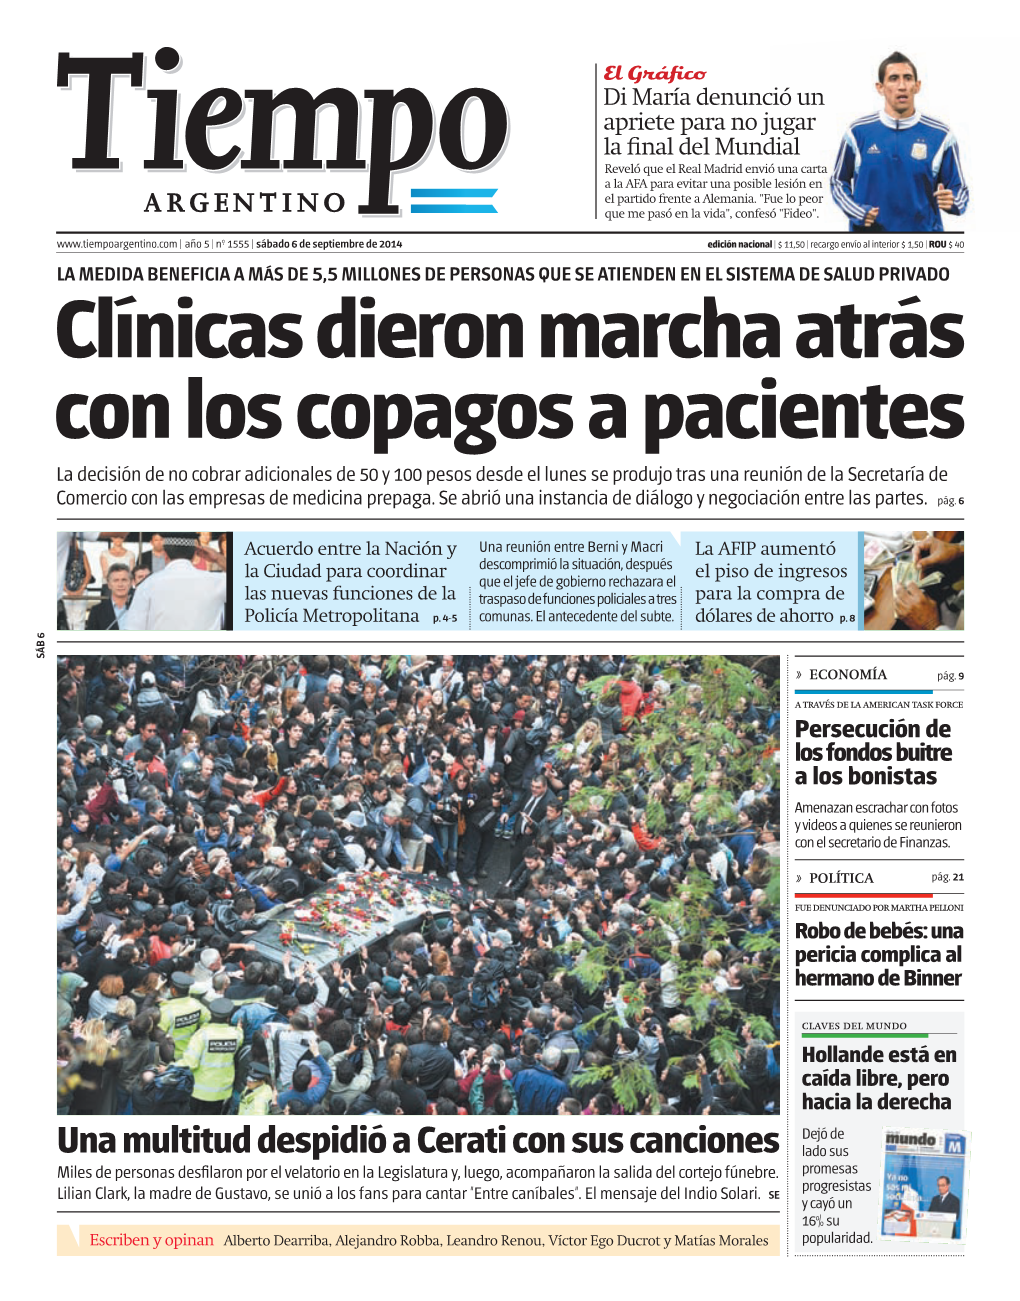 Clínicas Dieron Marcha Atrás Con Los Copagos a Pacientes